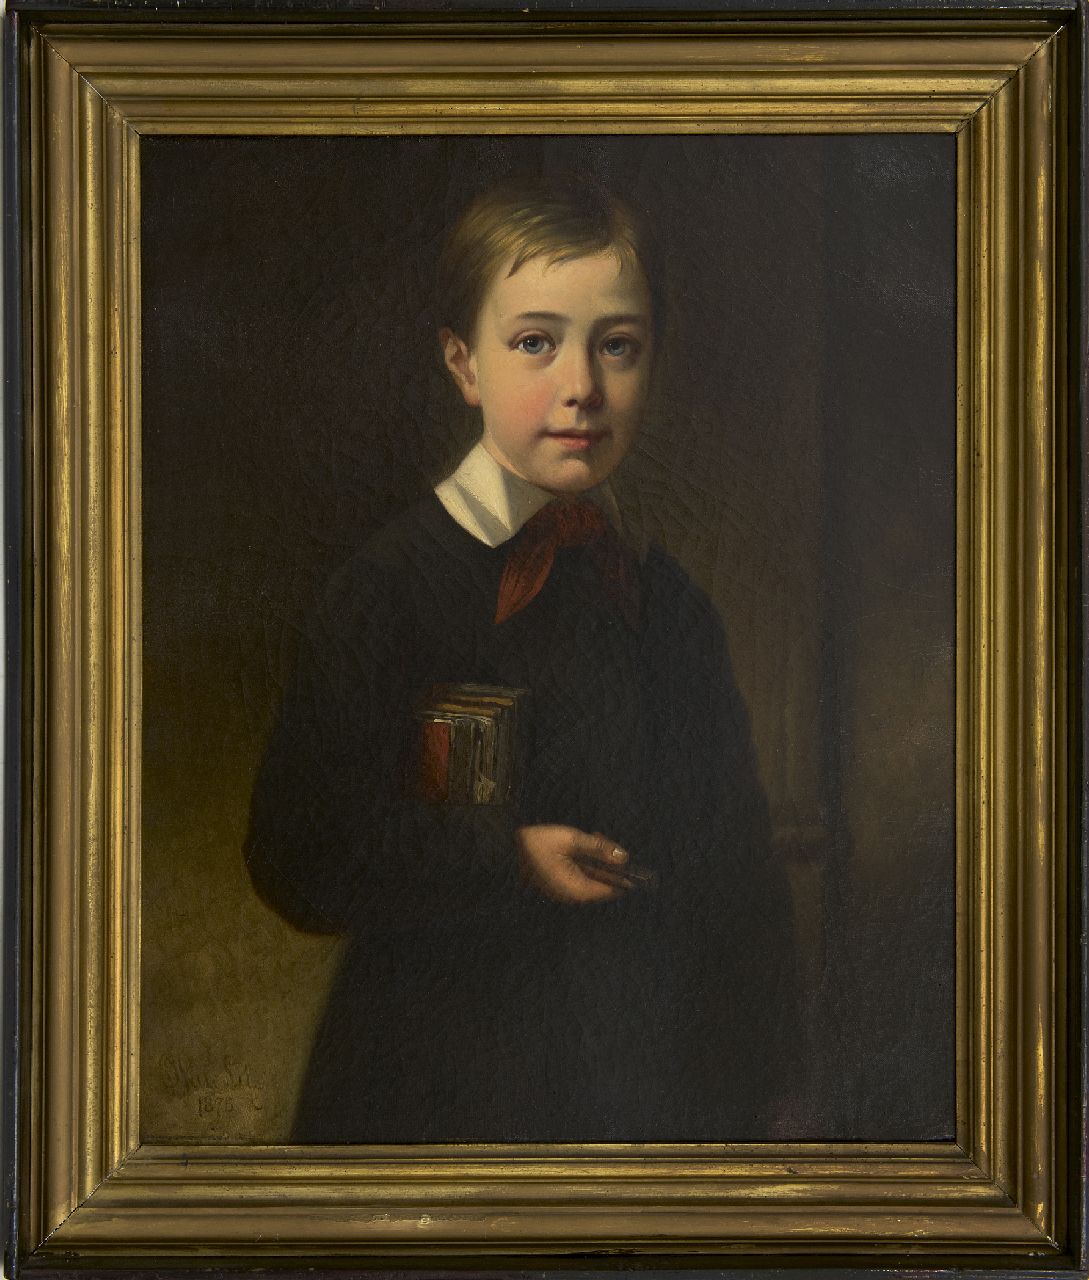 Lil J. van | Joseph van Lil | Gemälde zum Verkauf angeboten | Knabenporträt, Öl auf Leinwand 63,3 x 51,5 cm, Unterzeichnet u.l. und datiert 1875